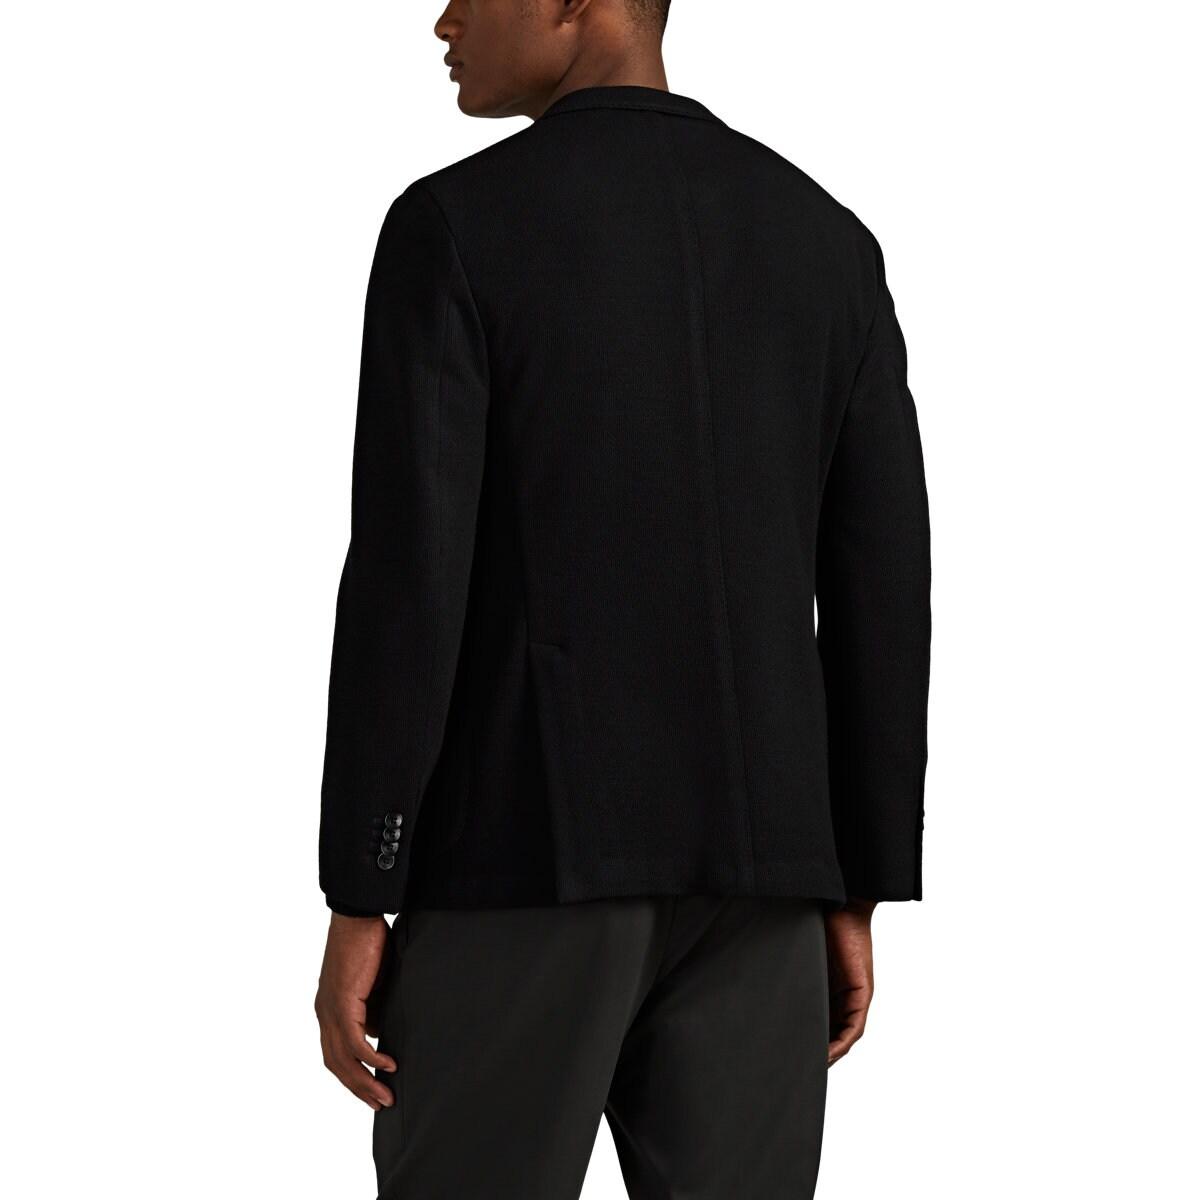 Boglioli K Jacket Wool-cotton Two-button Sportcoat in Black for Men - Lyst